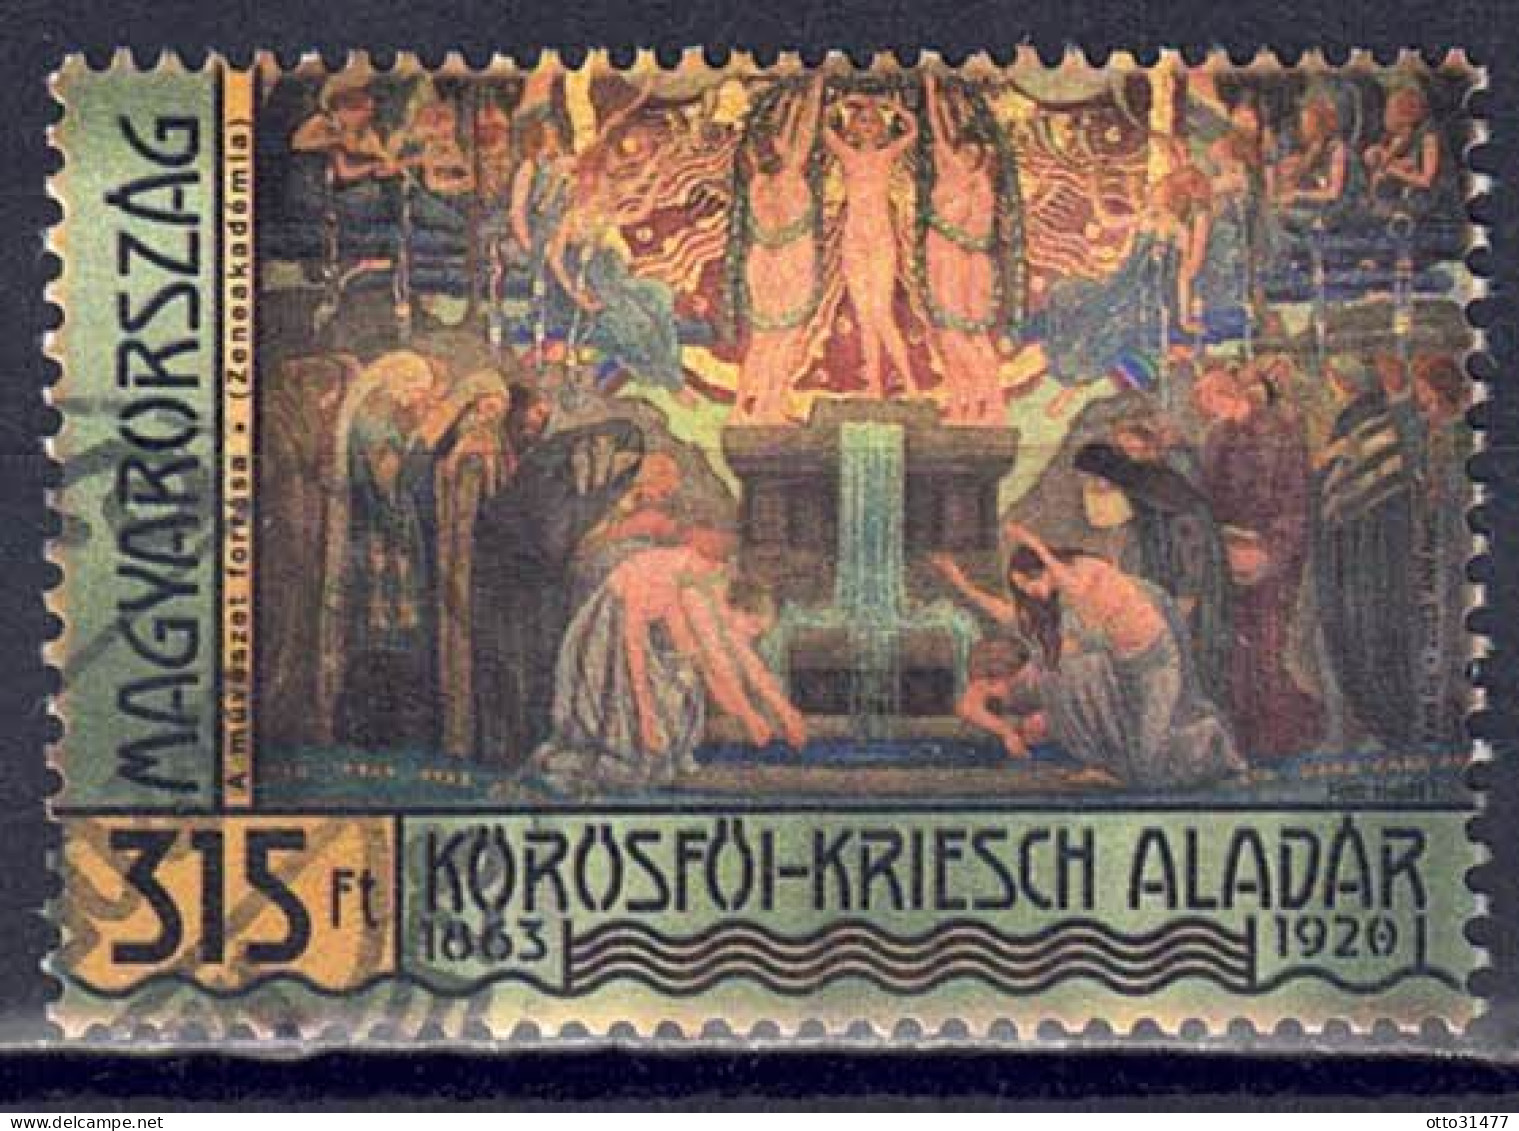 Ungarn 2013 - Aladár Körösföi-Kriesch, Nr. 5657, Gestempelt / Used - Gebraucht